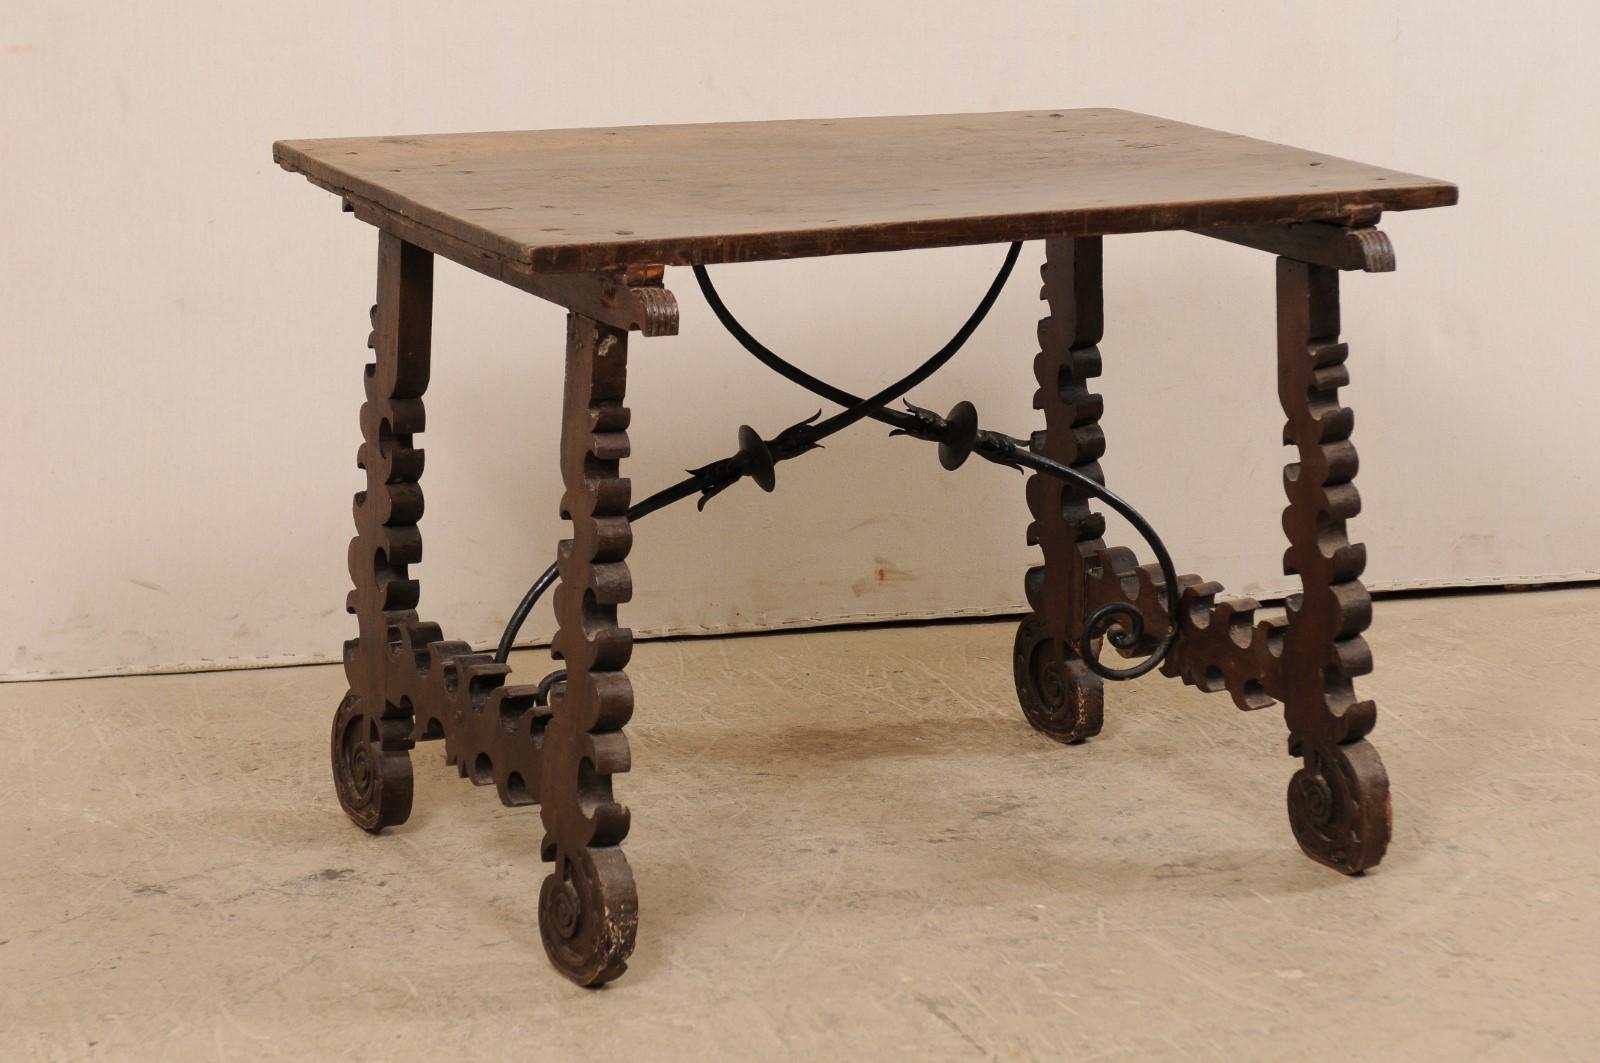 Ein spanischer Barocktisch mit dekorativer schmiedeeiserner Bahre aus dem 18. Jahrhundert. Dieser antike Tisch aus Spanien hat eine rechteckige Platte, die an beiden Enden auf einem Paar fließend geschnitzter, leierförmiger Beine ruht, die wie ein